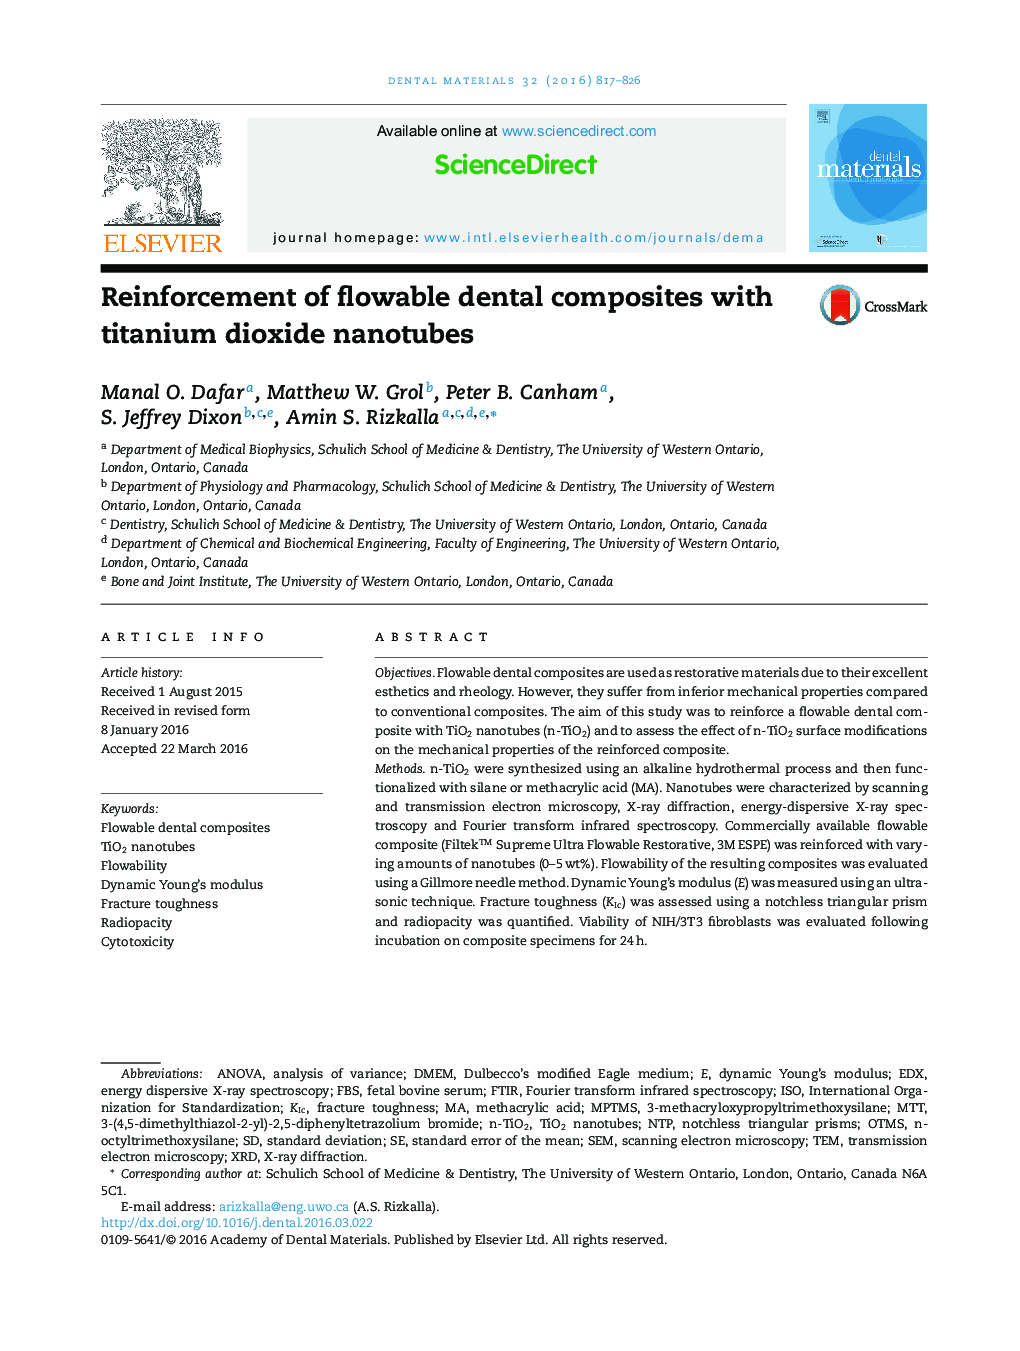 Reinforcement of flowable dental composites with titanium dioxide nanotubes